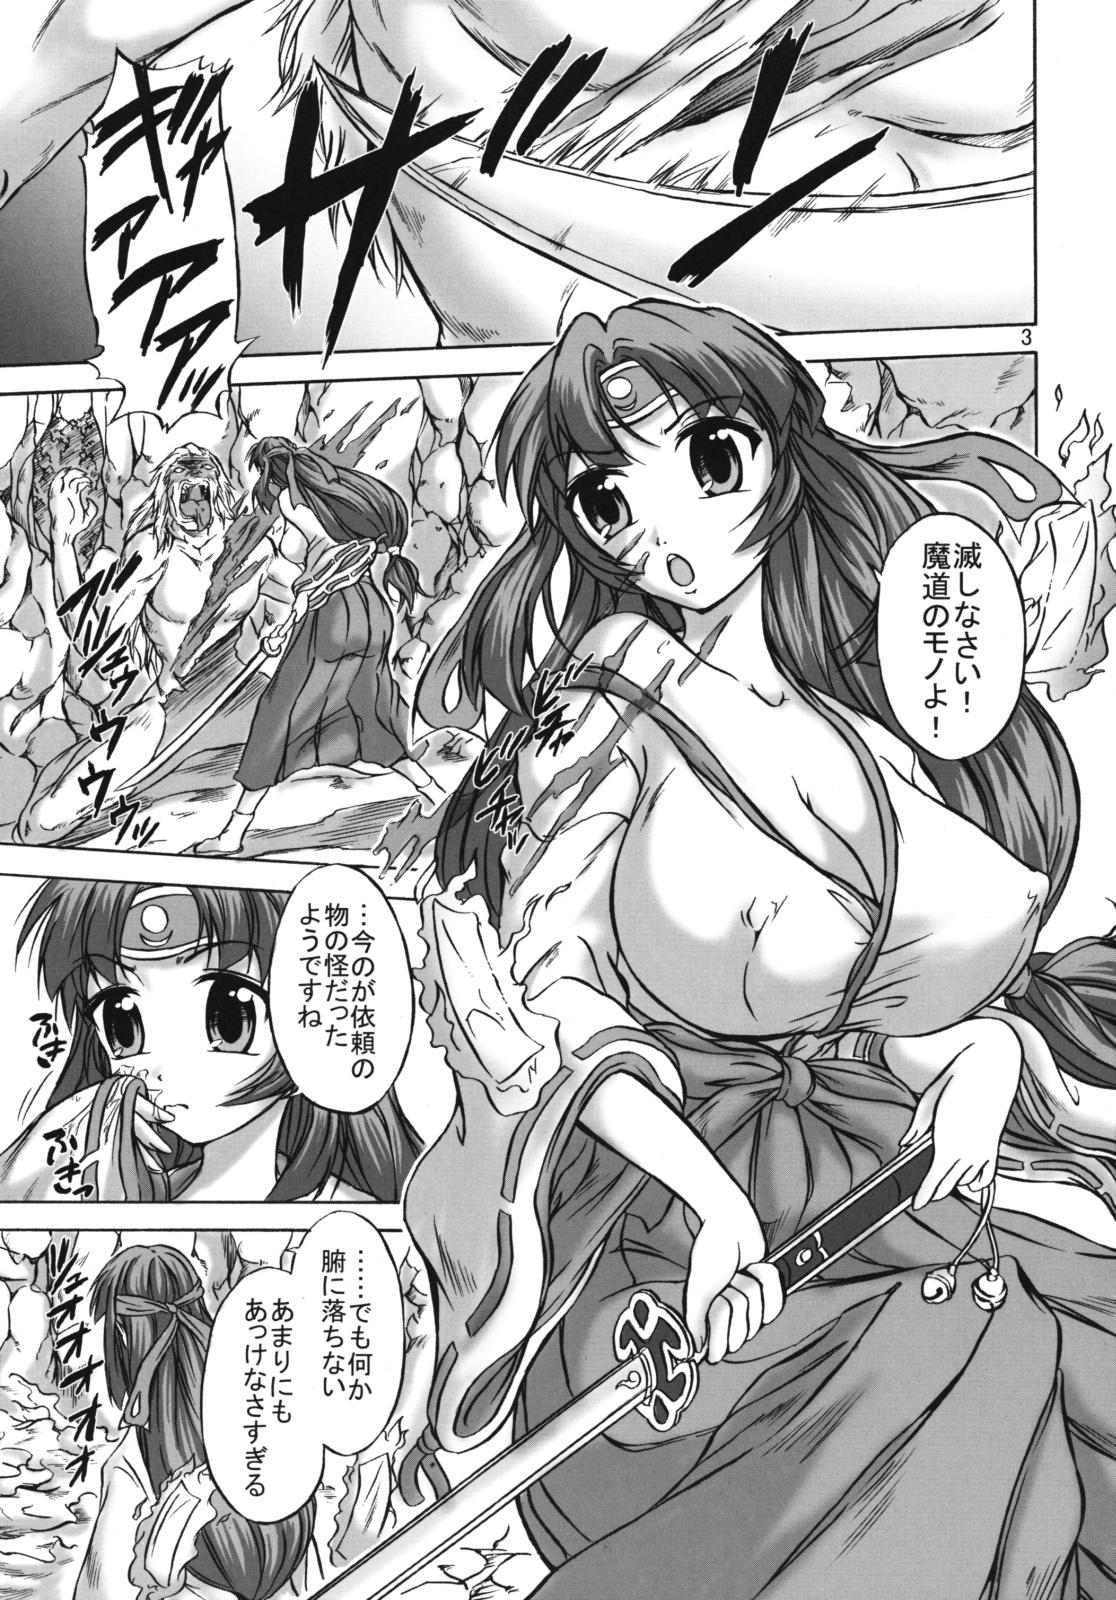 Shorts Kairai Senki - Queens blade Flash - Page 2